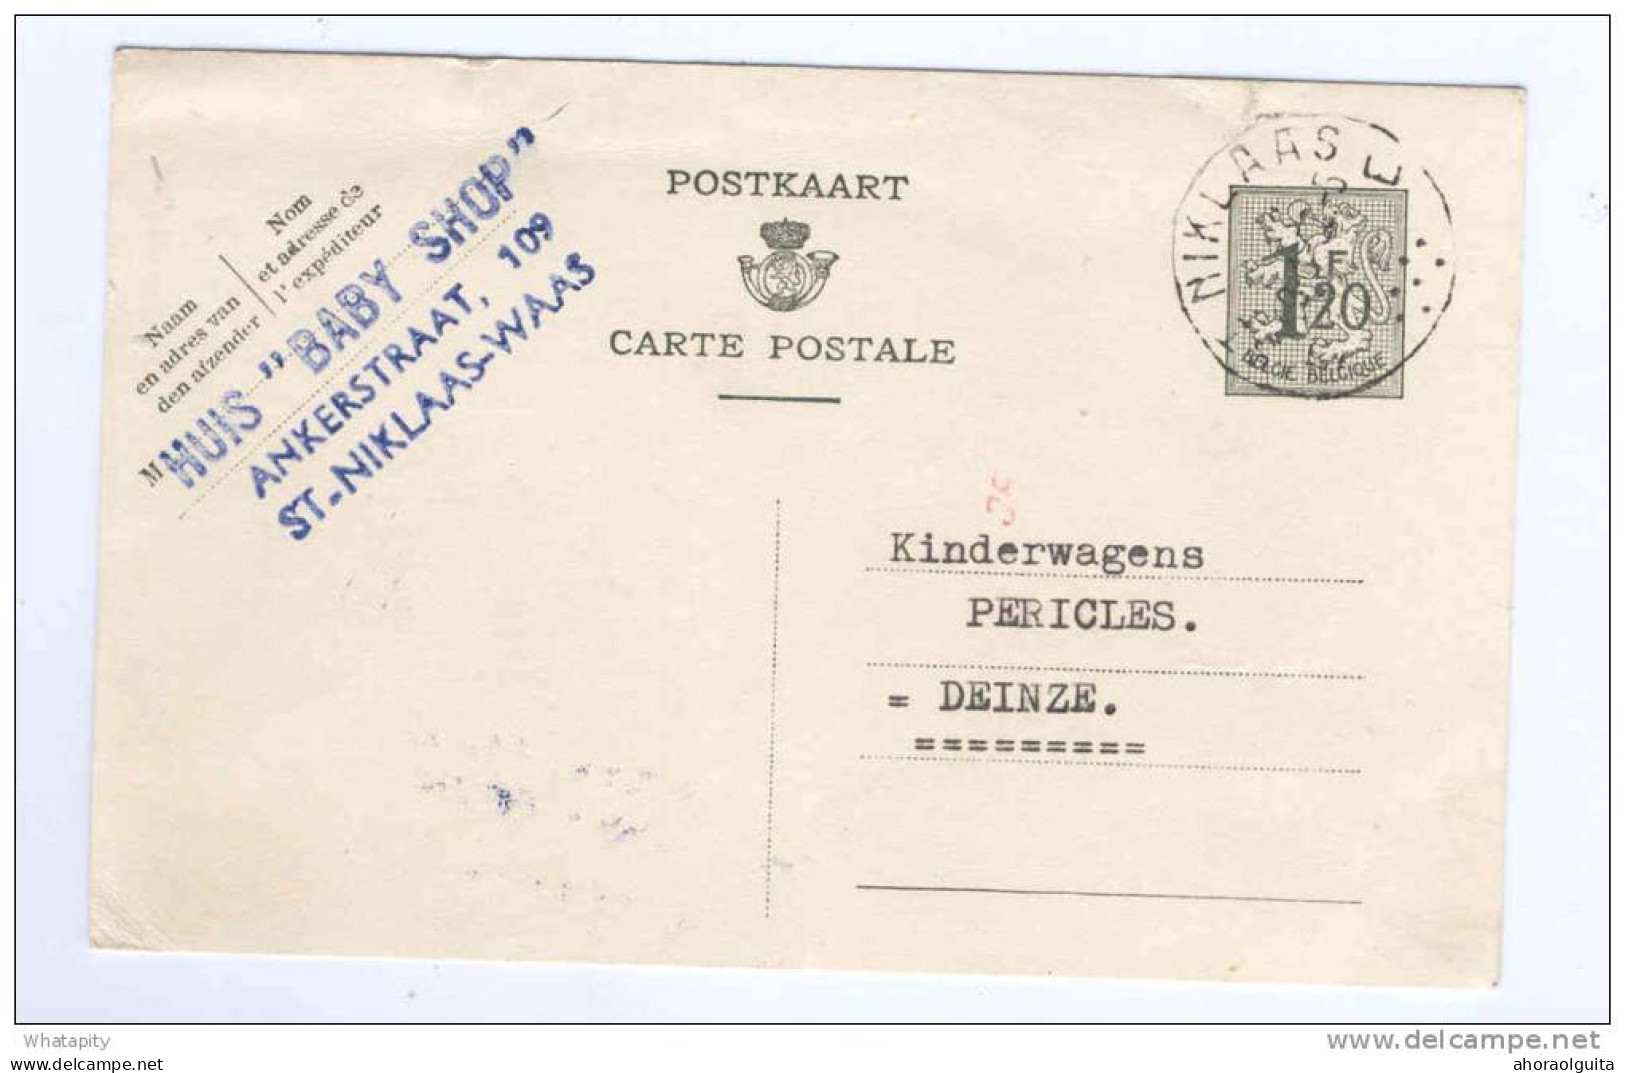 Entier Postal Lion Héraldique SINT NIKLAAS 1953 -  Cachet Privé Huis Baby Shop  -- B4/546 - Cartes Postales 1951-..